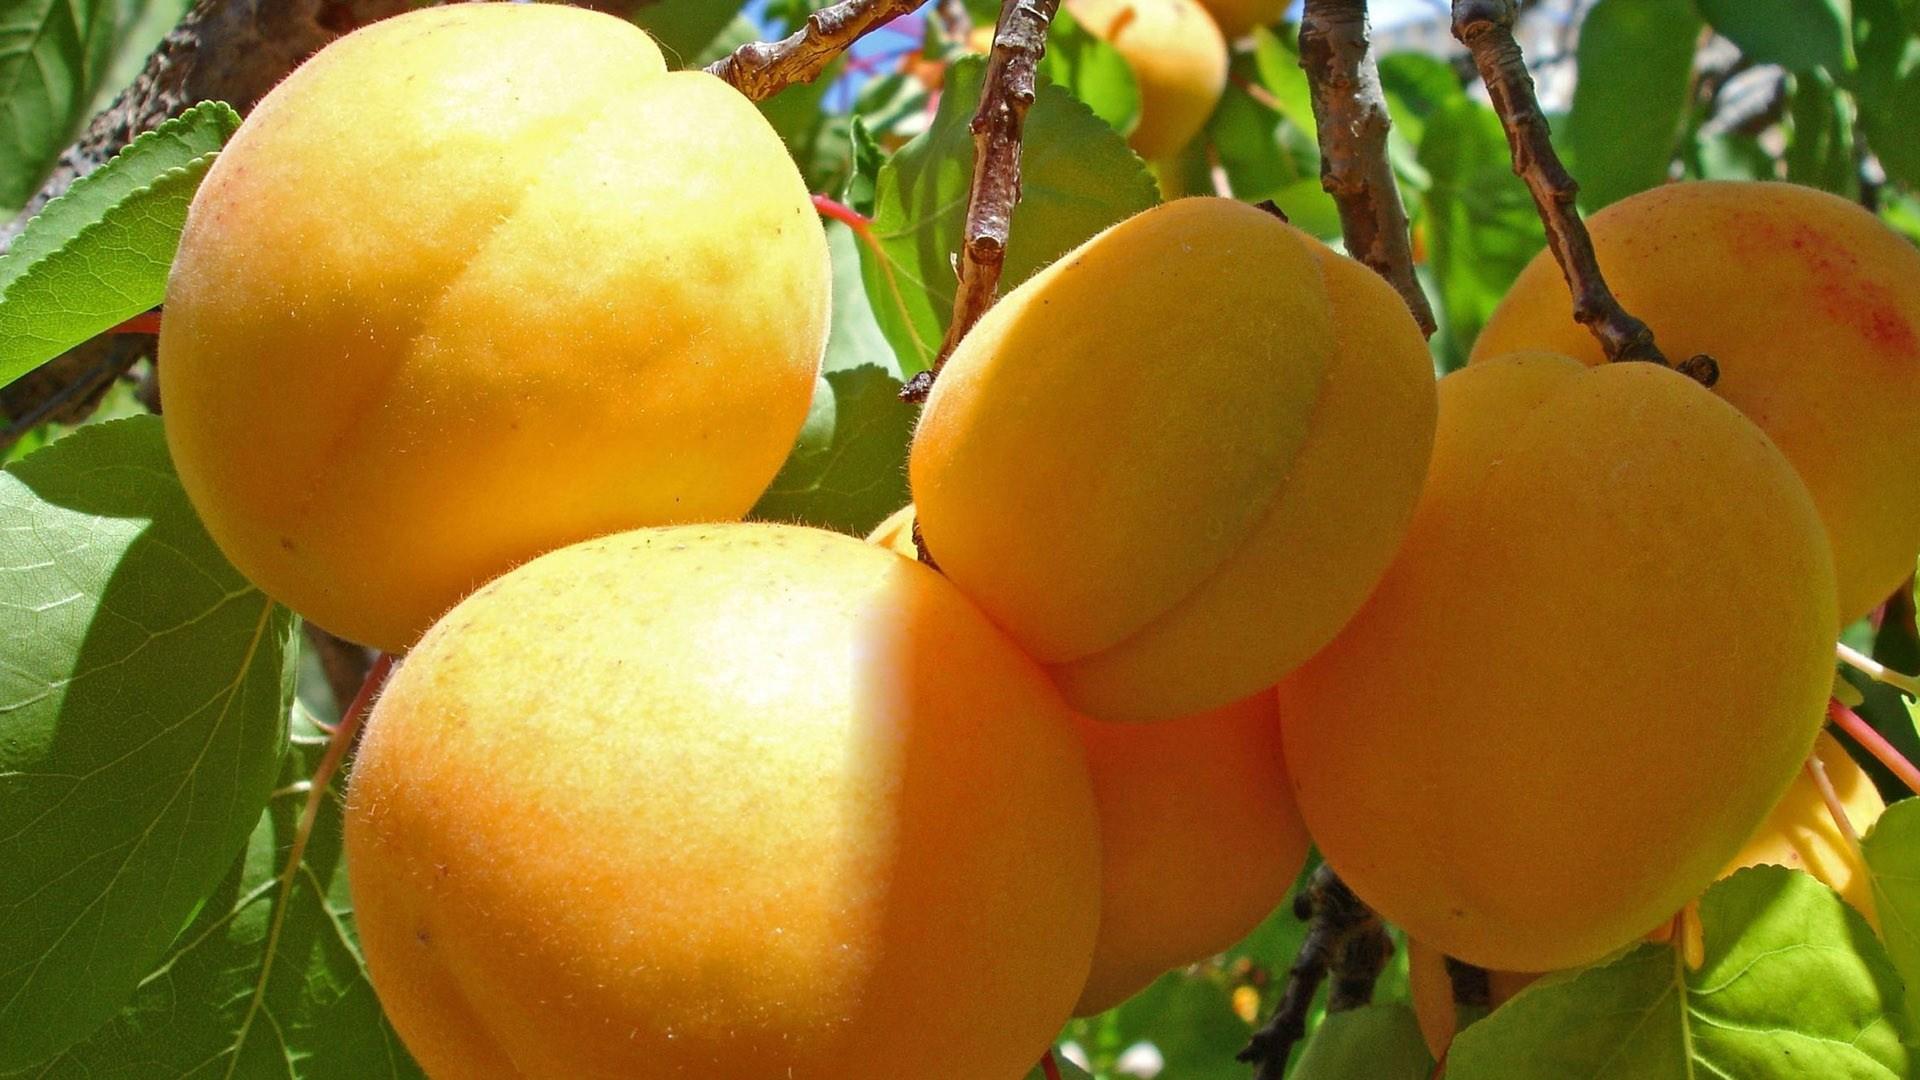 没有成熟的绿色杏子 - 免费可商用图片 - CC0素材网